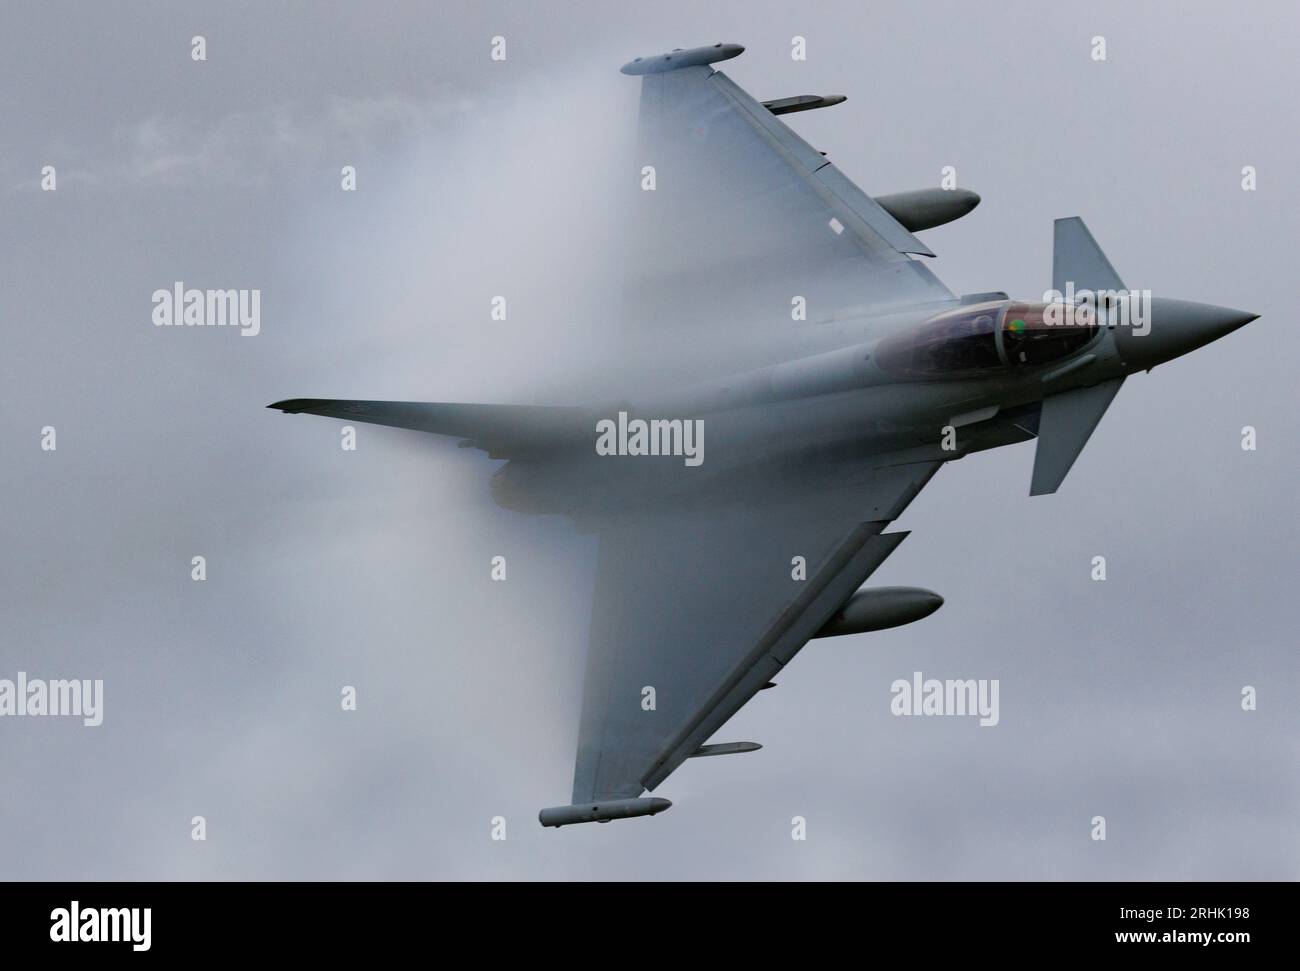 Le typhon Eurofighter de la RAF s'entraîne à basse altitude dans la région de Mach Loop au pays de Galles Banque D'Images